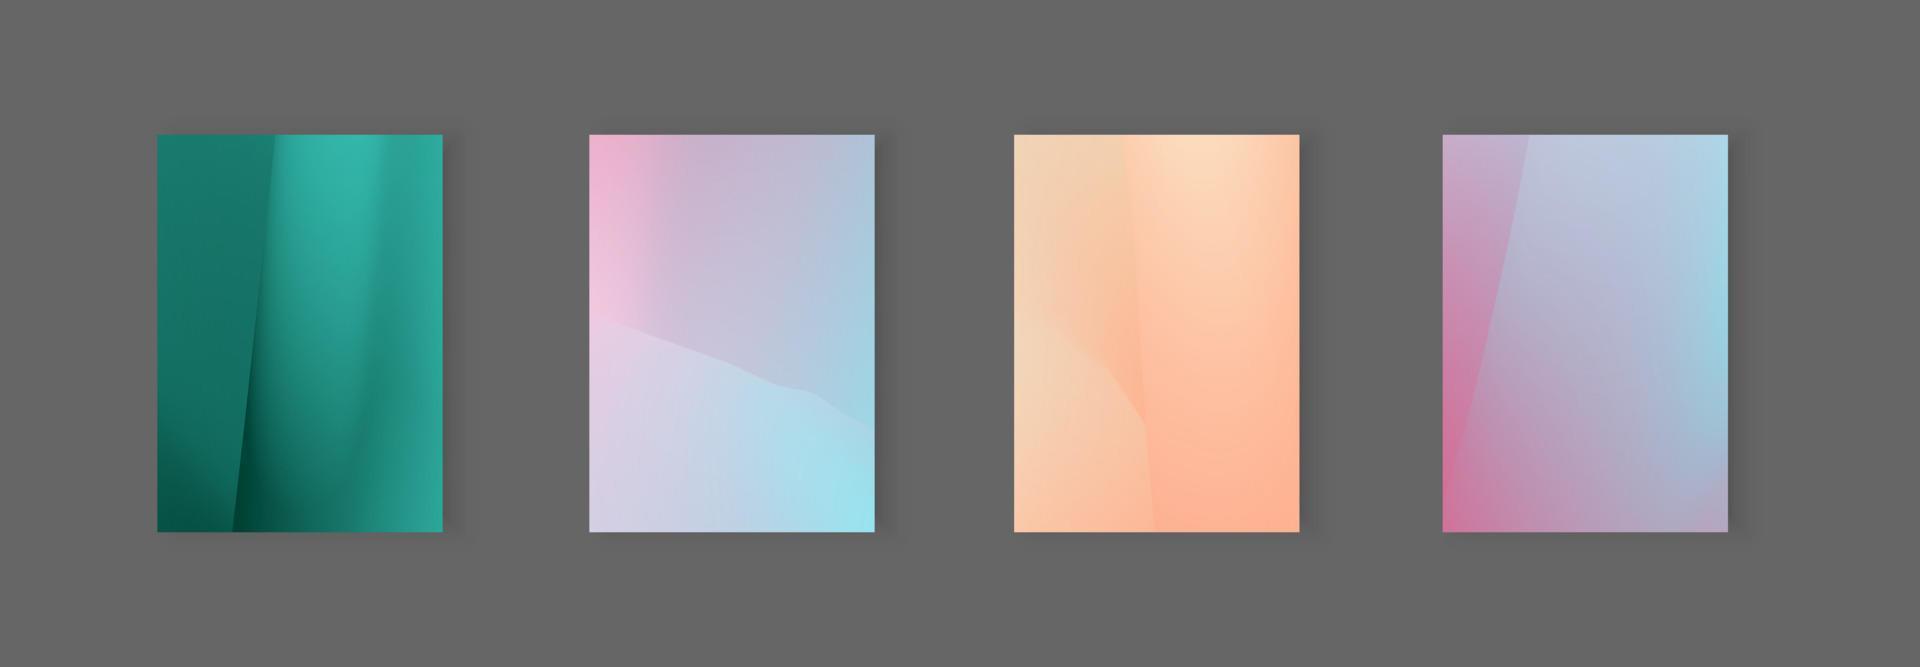 Illustration eines abstrakten Musterhintergrunds in hellen Farben mit Liniengradiententextur für minimales dynamisches Coverdesign. Poster-Vorlage vektor